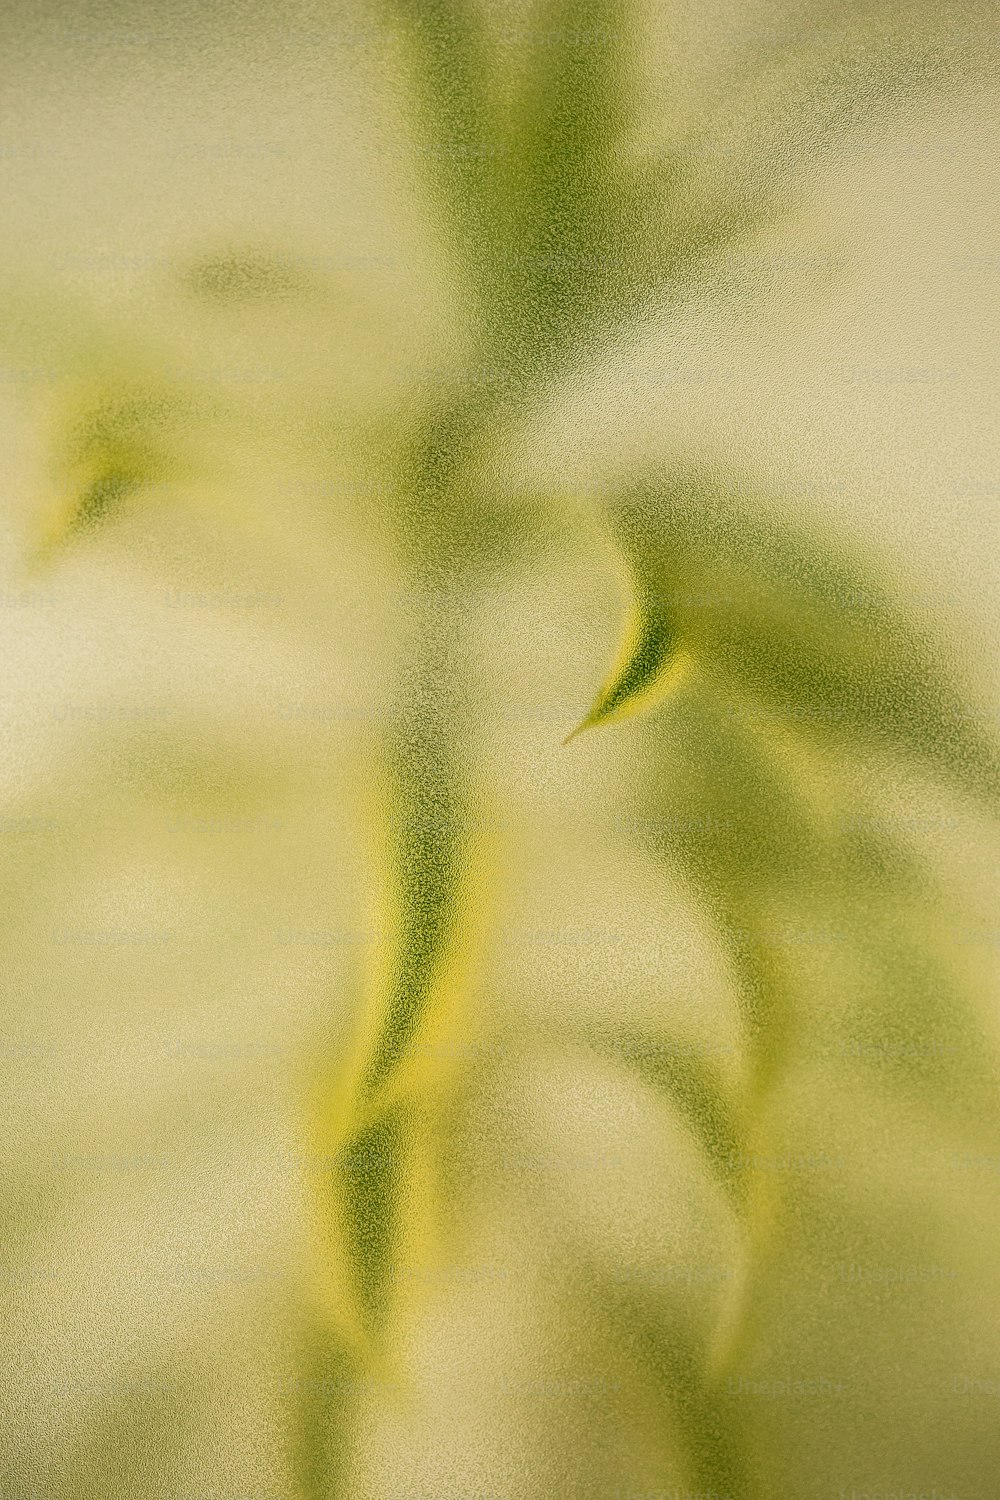 Una foto borrosa de una planta con hojas verdes